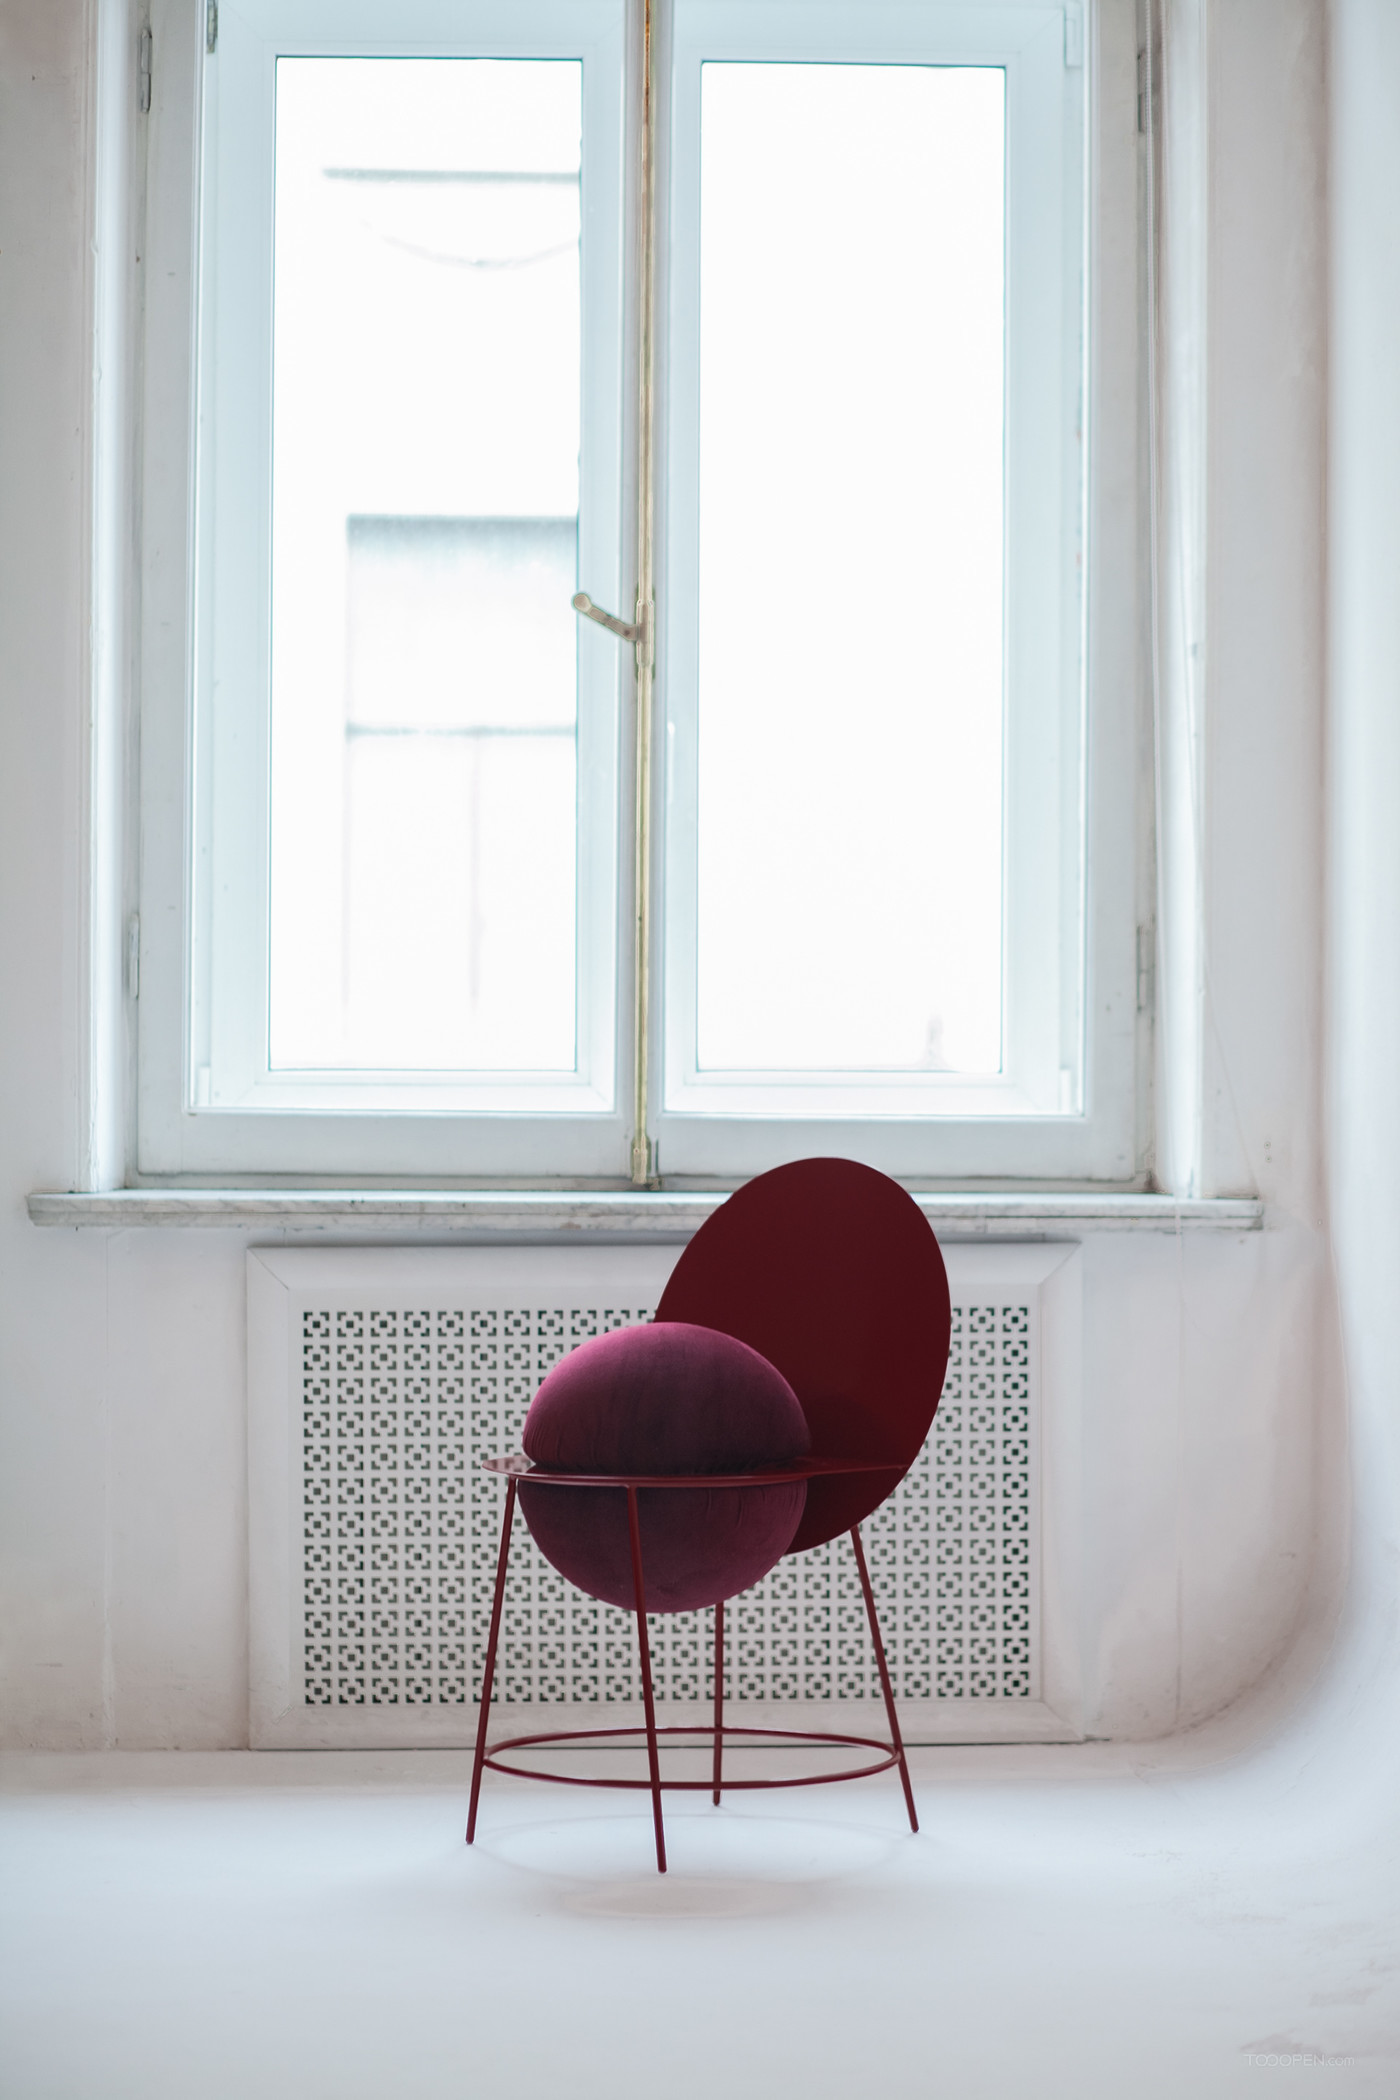 国外创意圆形几何椅家具设计欣赏-08